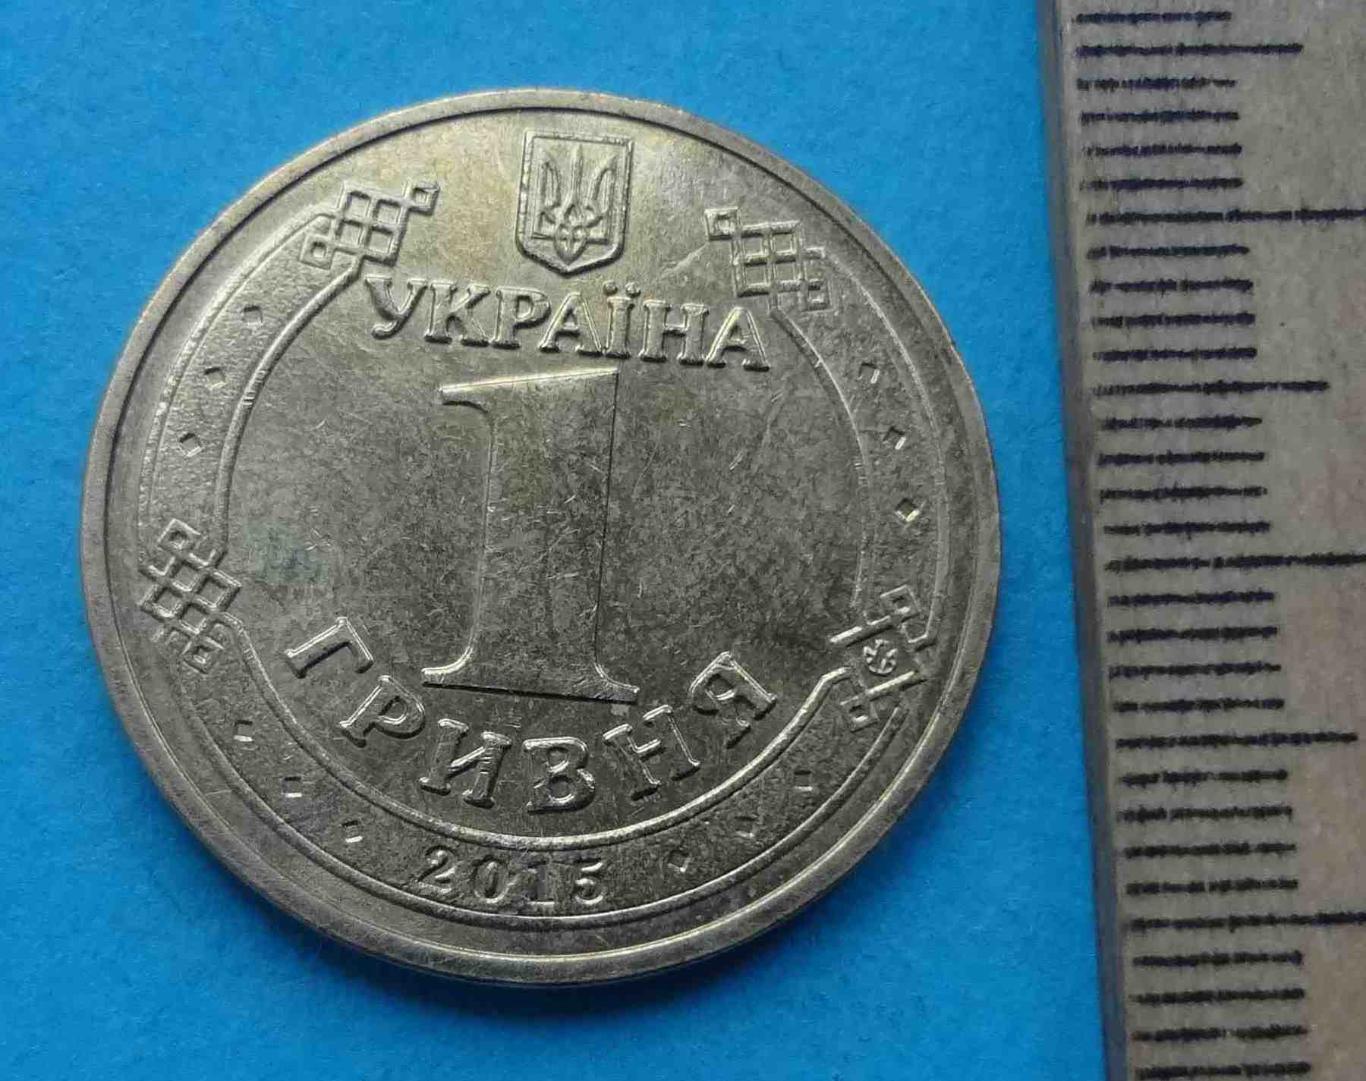 1 гривна 2015 года 70 лет Победы 1945-2015 Украина (20) 1